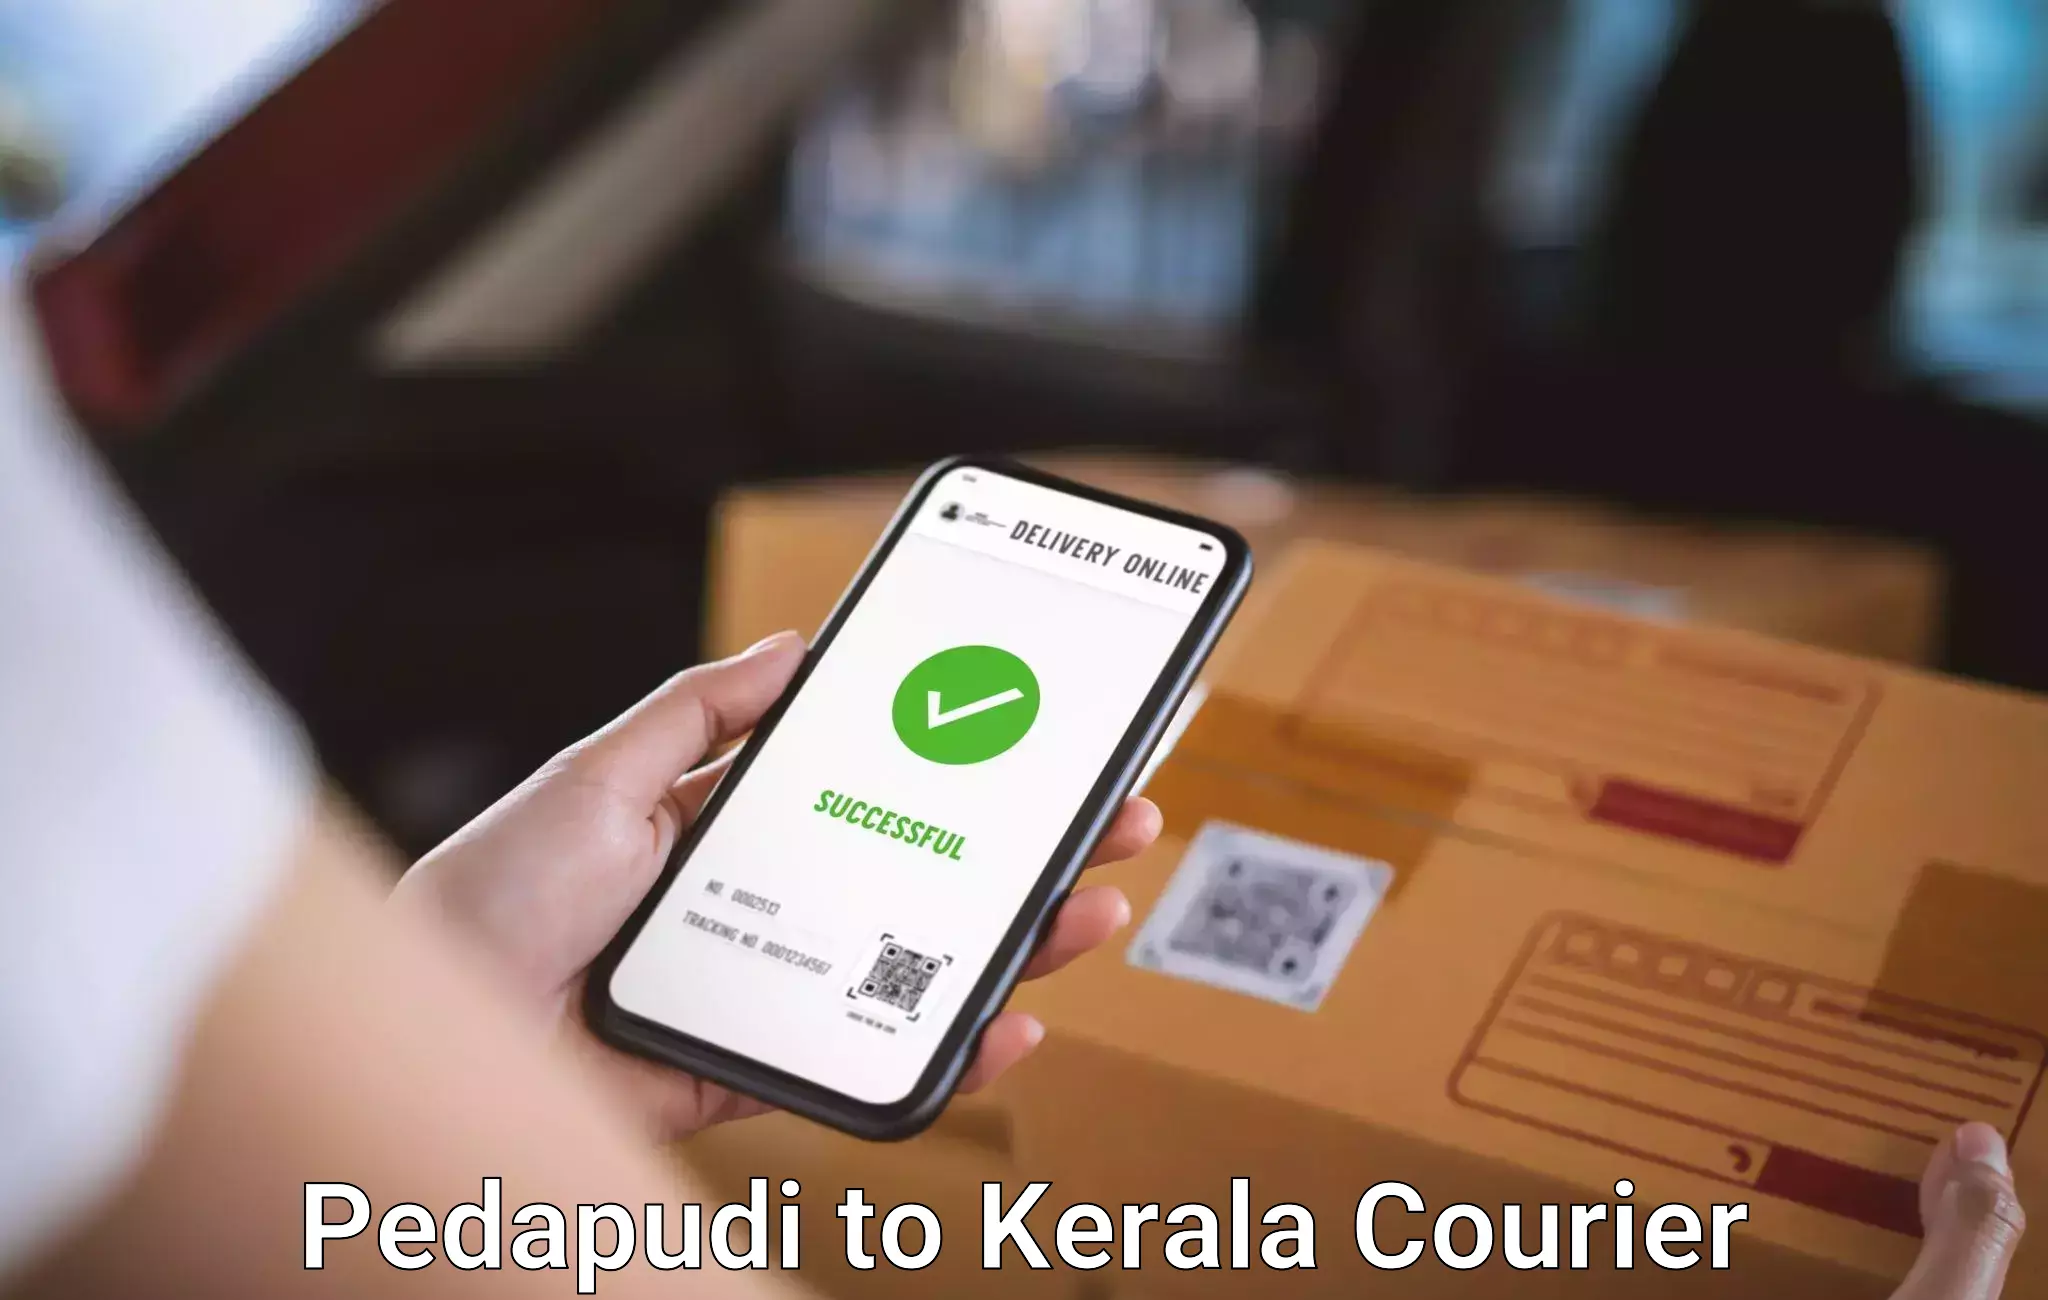 Door to door luggage delivery Pedapudi to Kerala